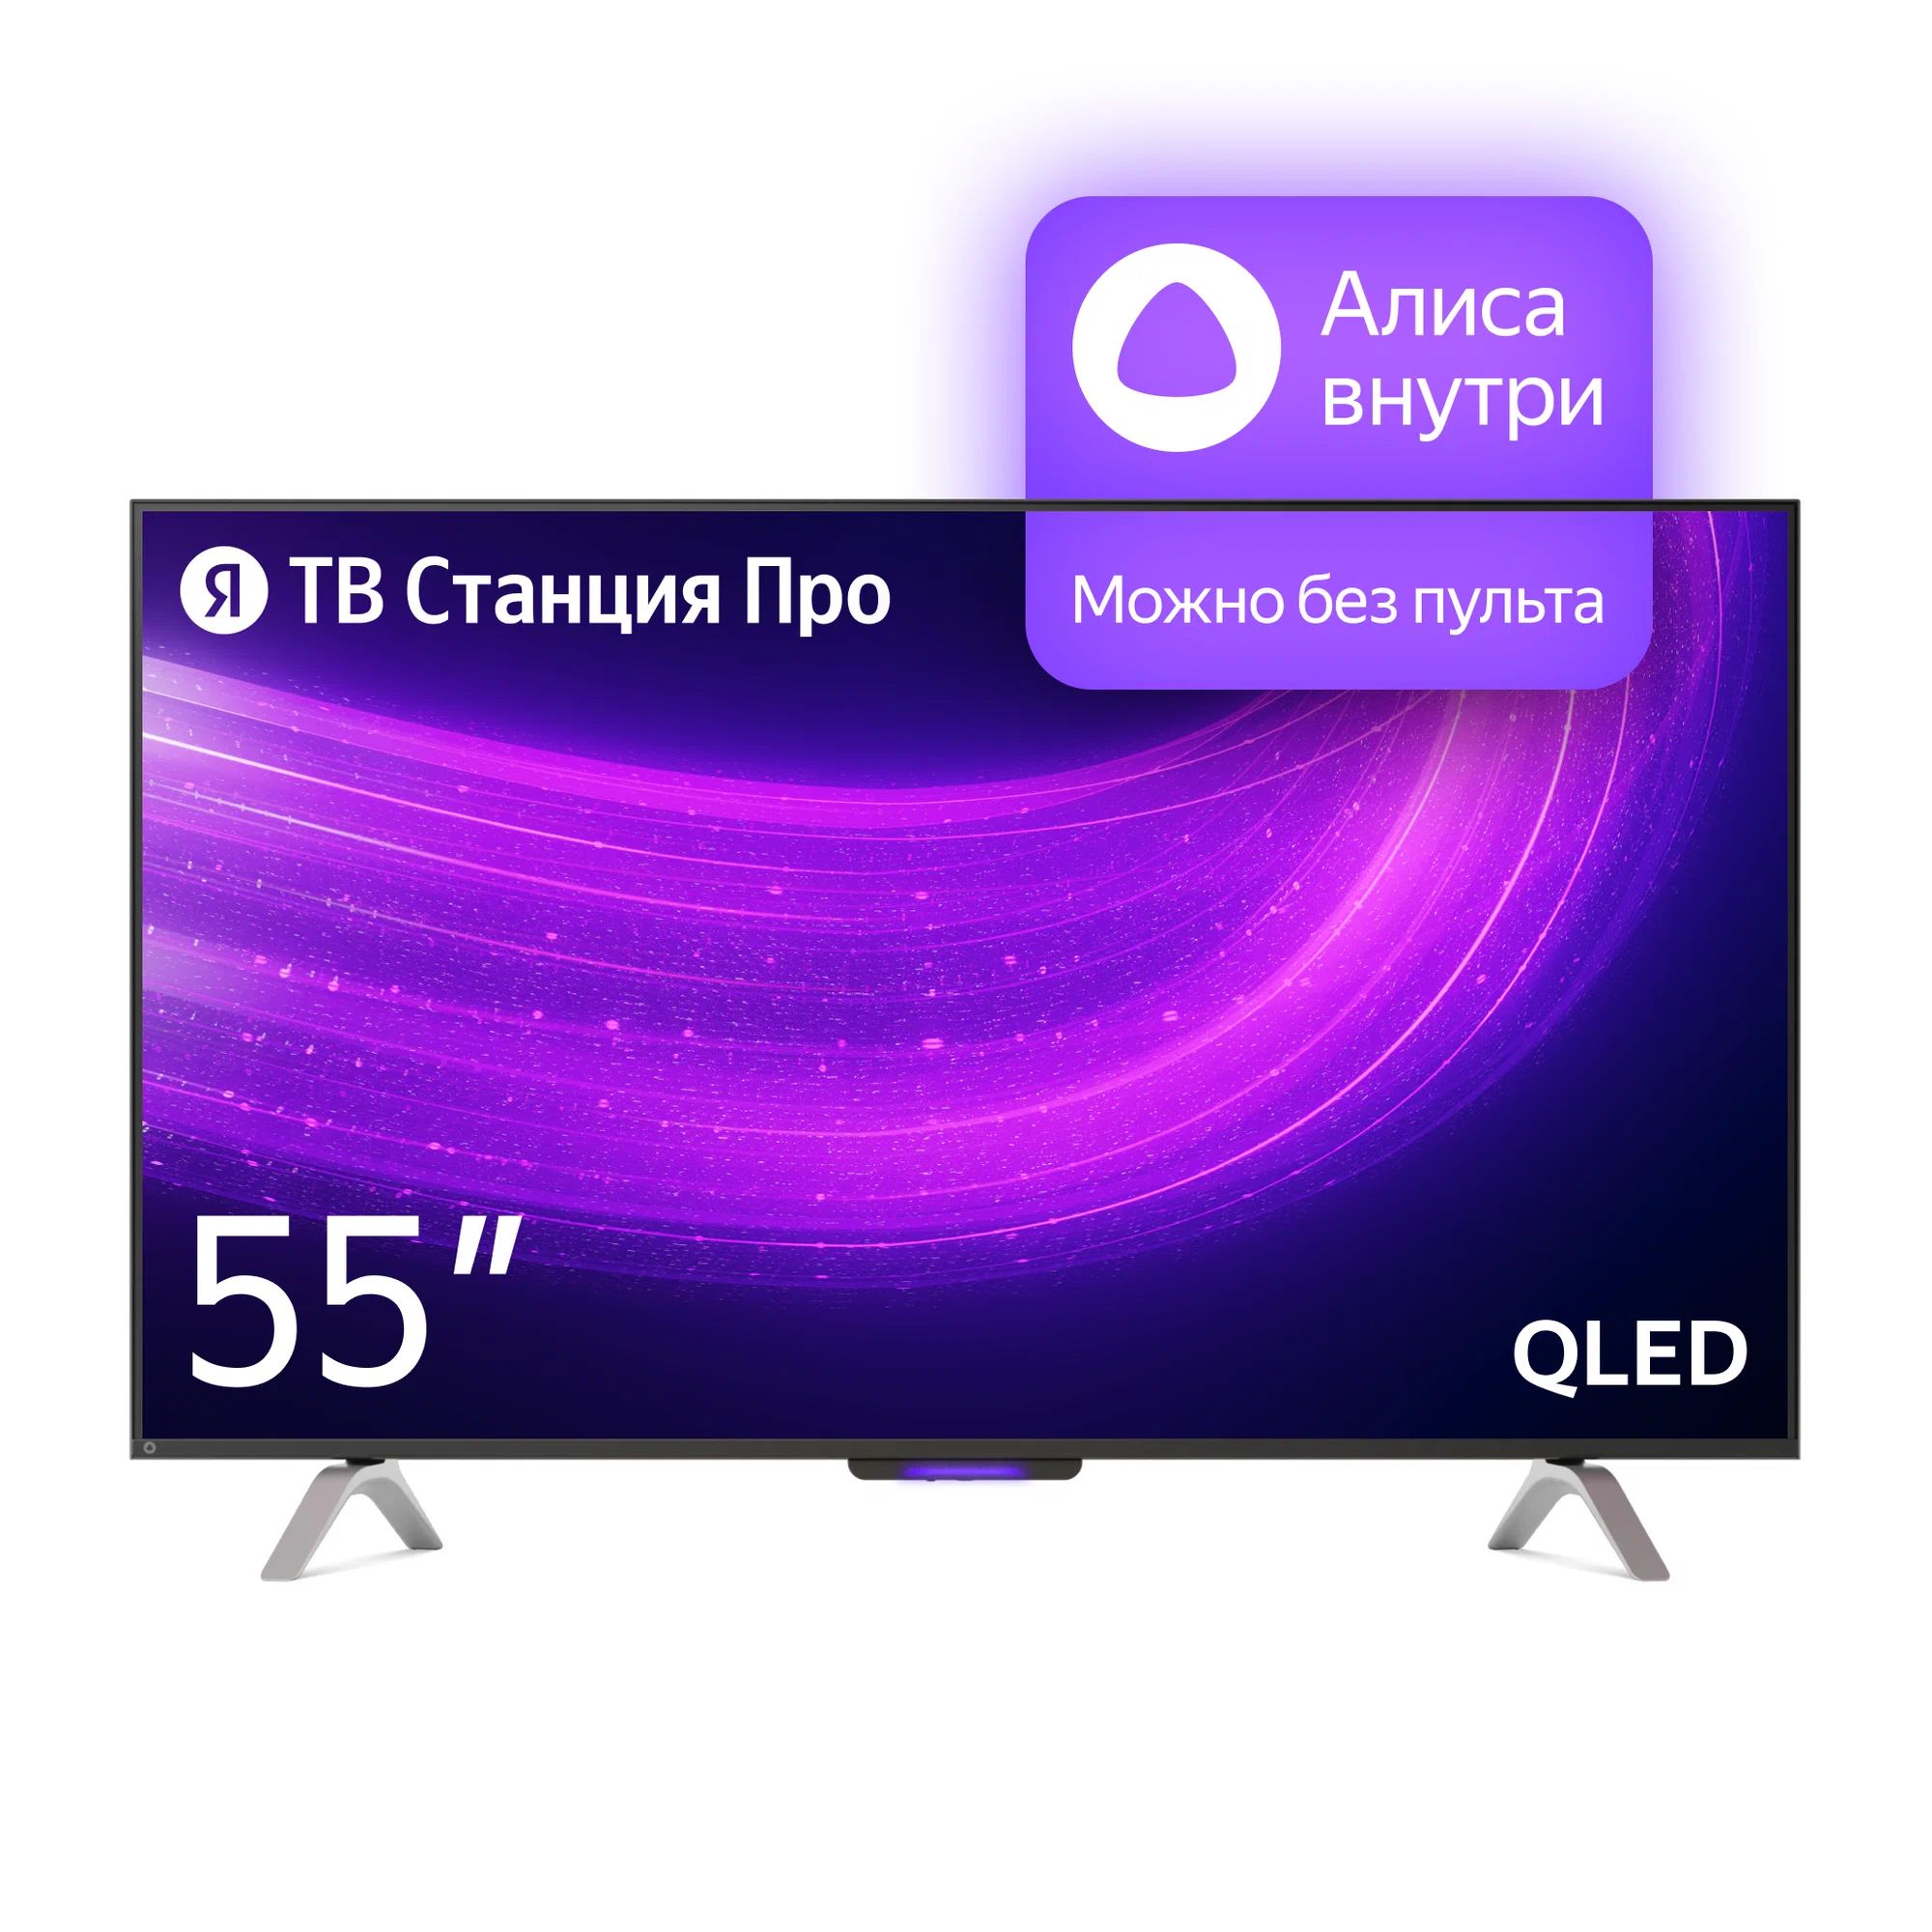 Телевизор Яндекс YNDX-00101 PRO Тв станция с Алисой 55 телевизор яндекс 43 тв станция с алисой yndx 00091